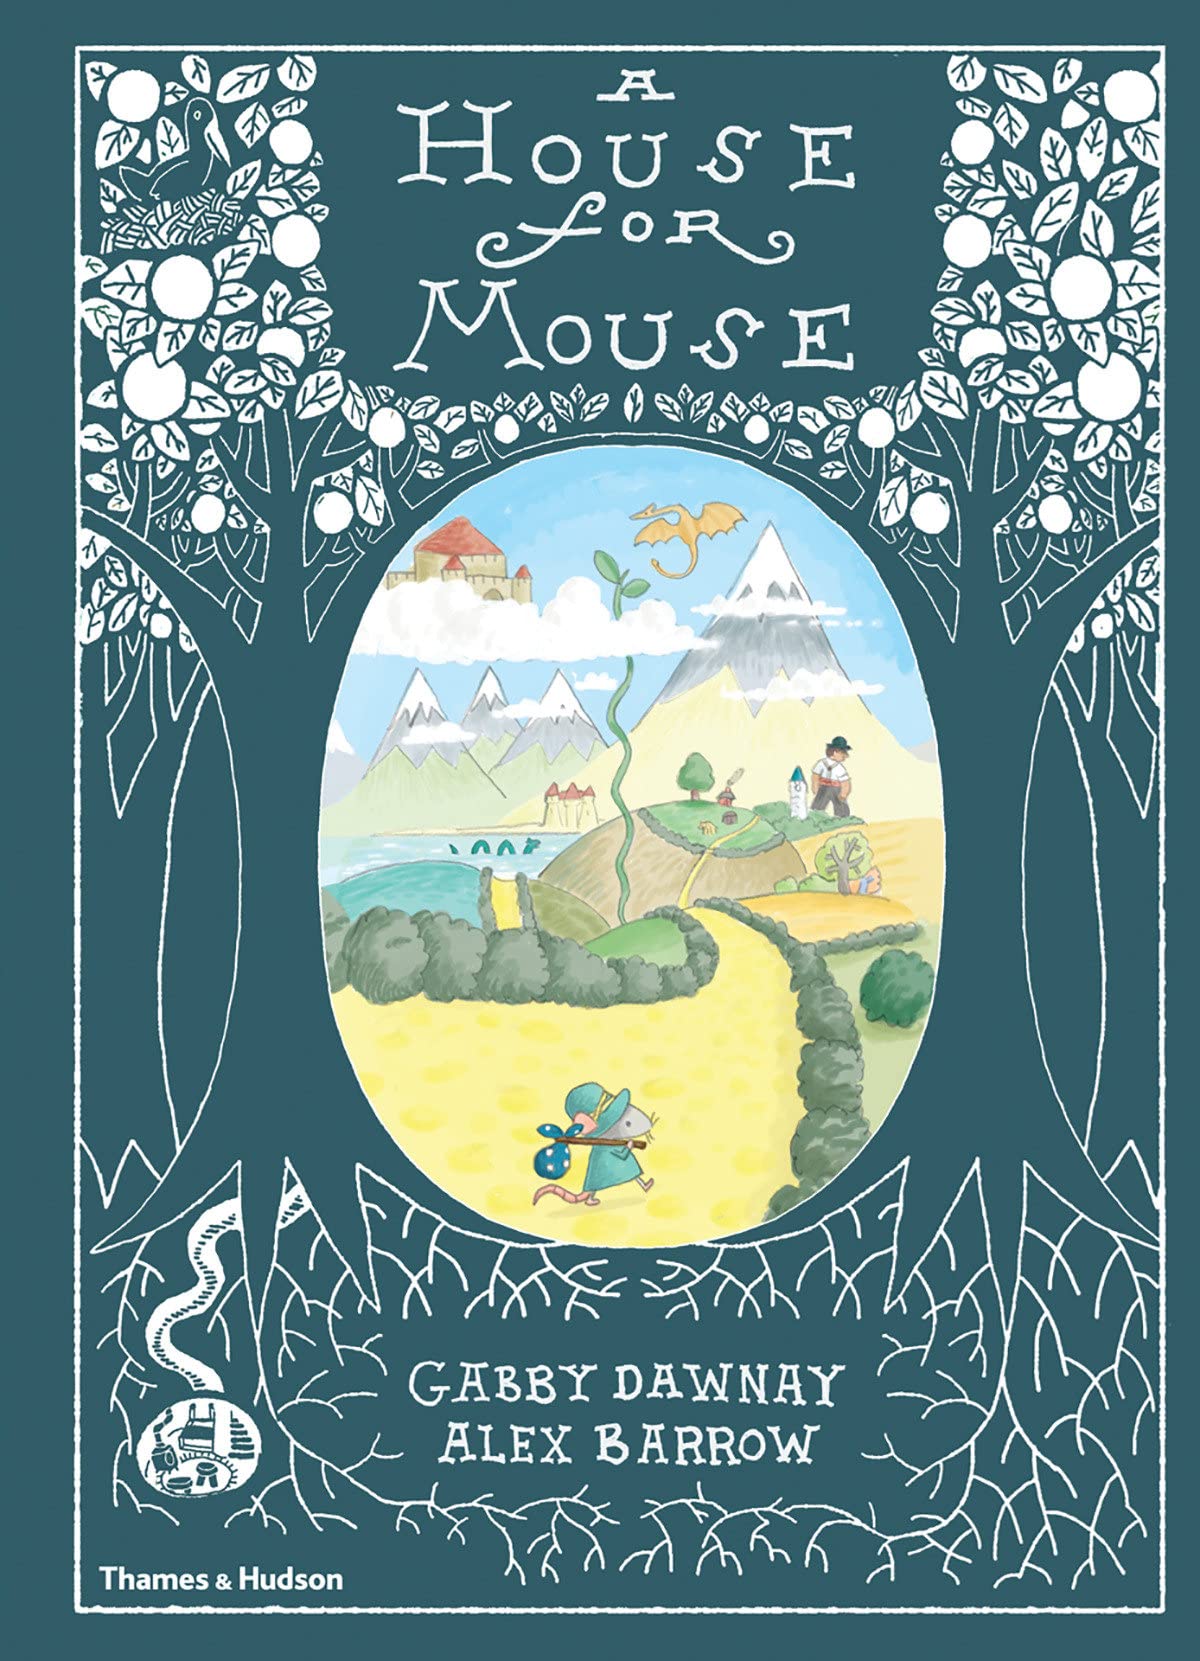 A House For Mouse - Gabby Dawnay + Alex Barrow